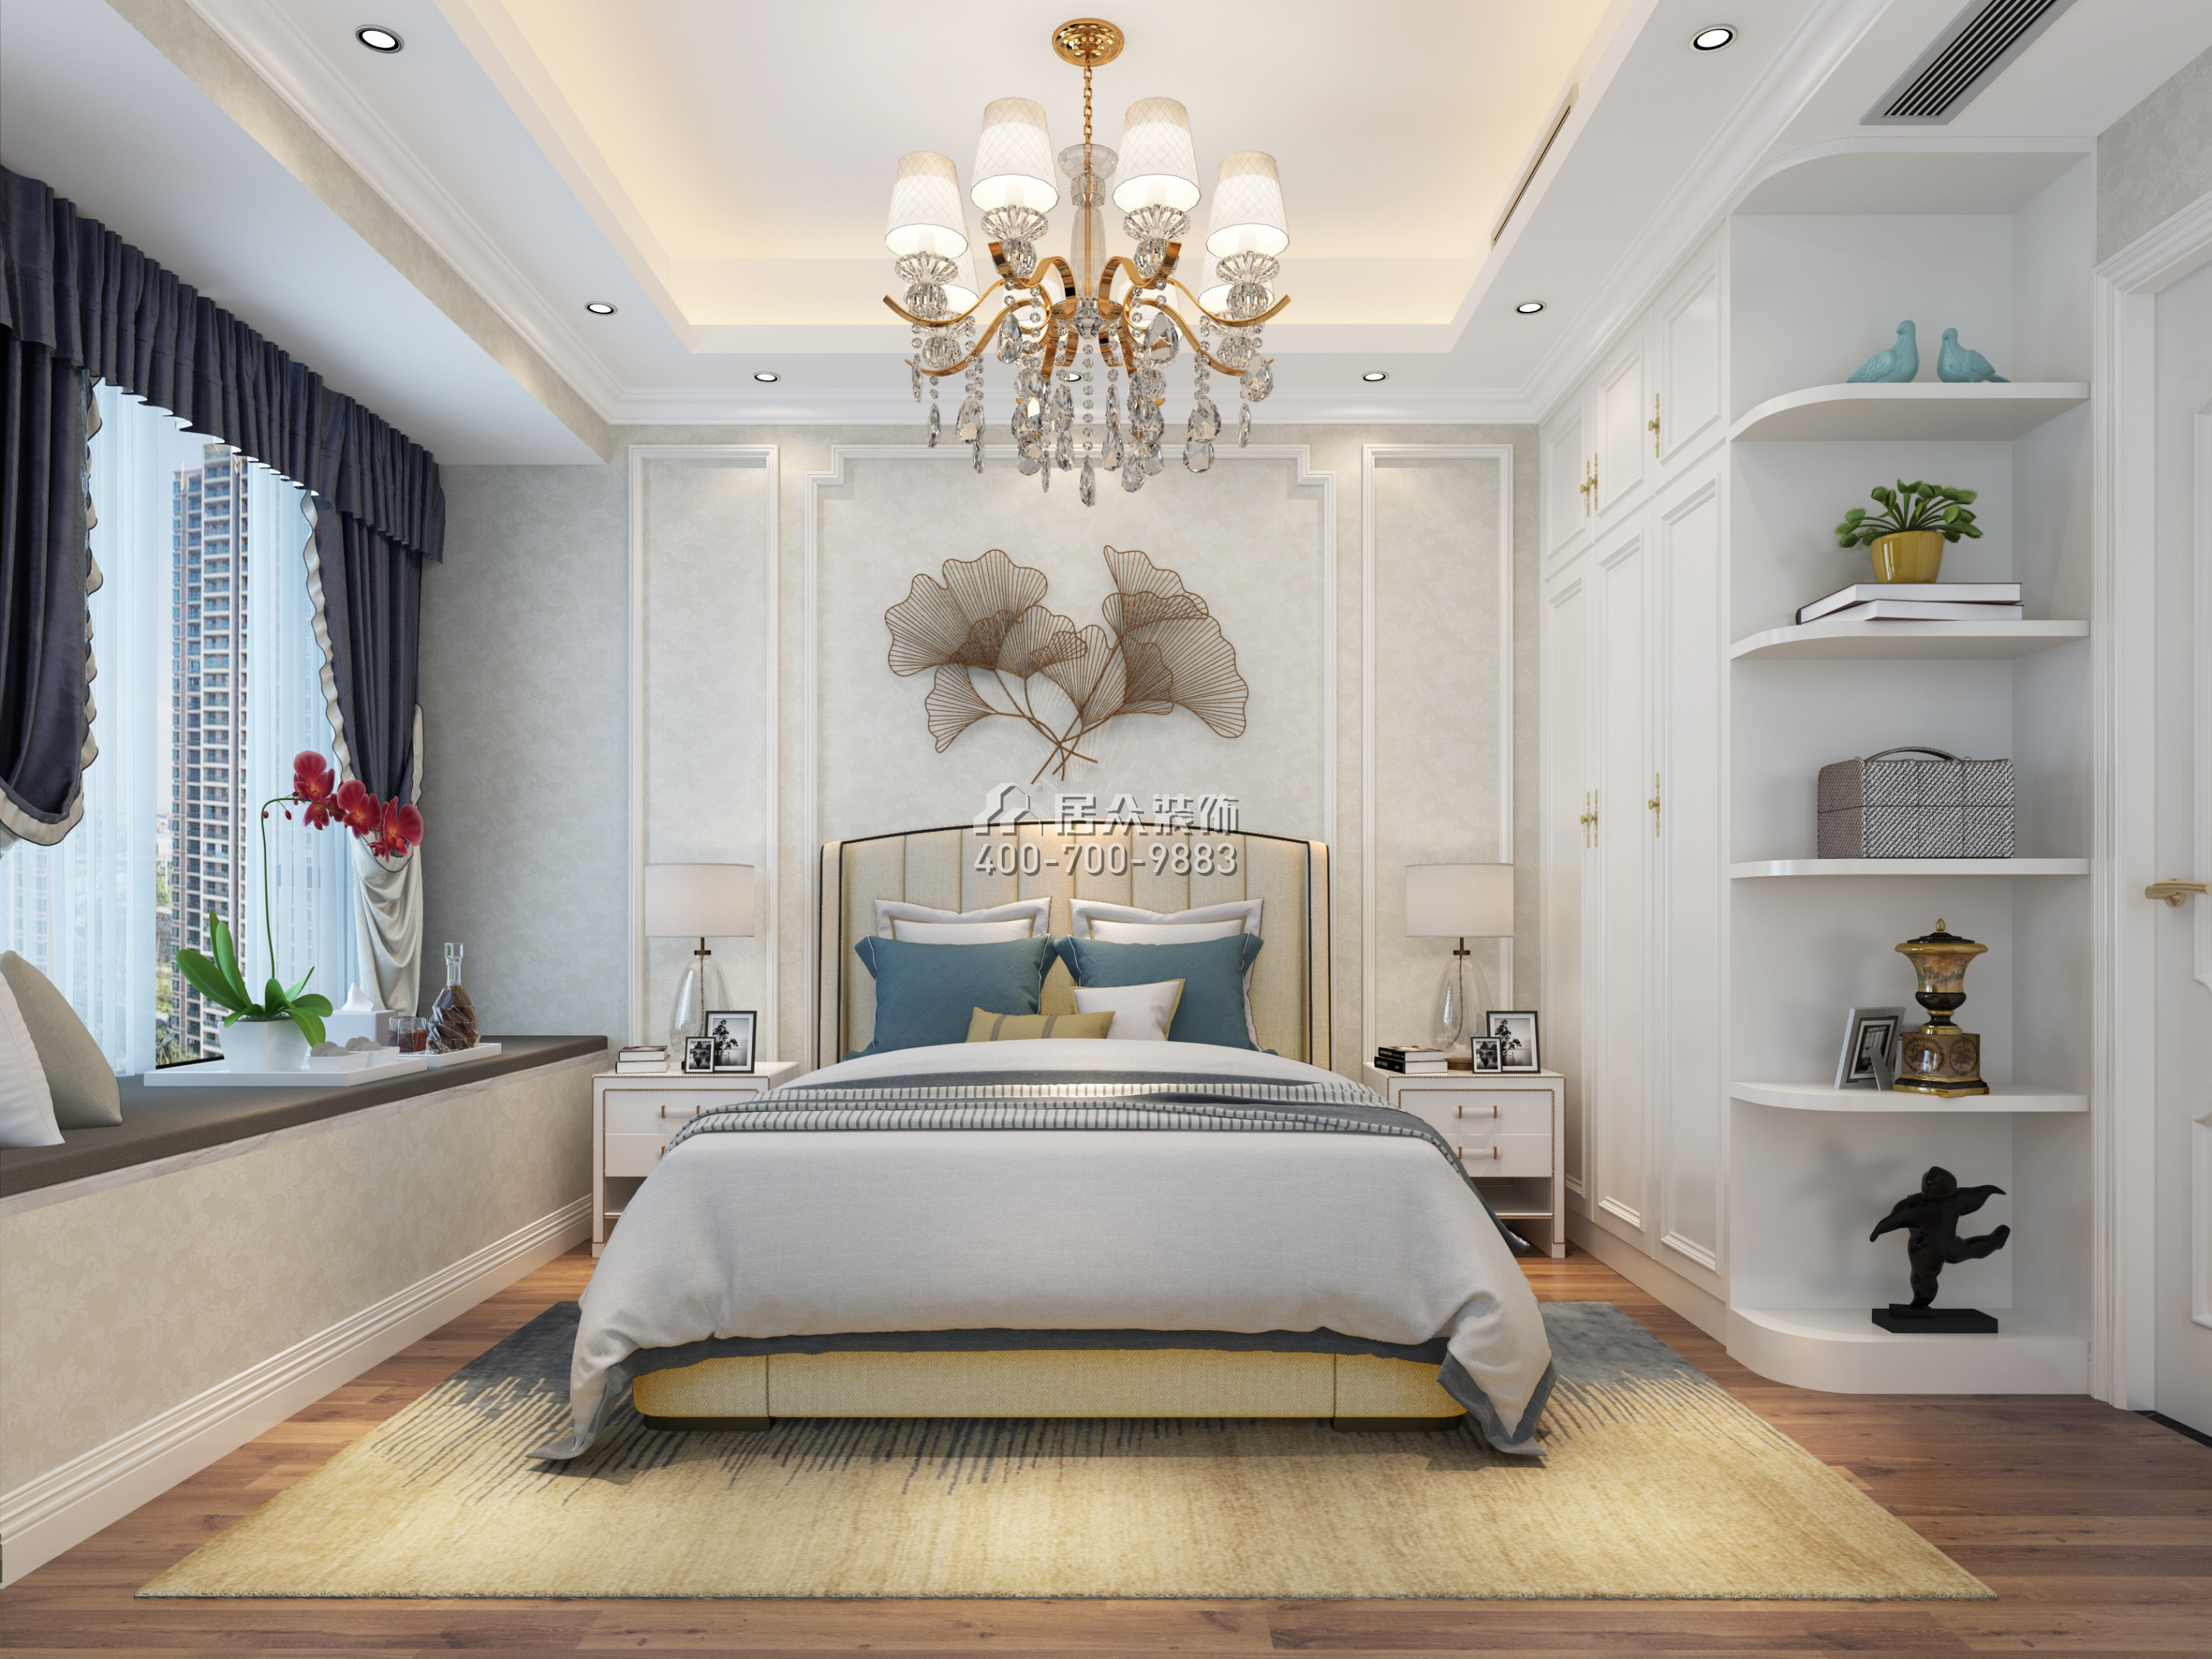 華強城110平方米現代簡約風格平層戶型臥室裝修效果圖